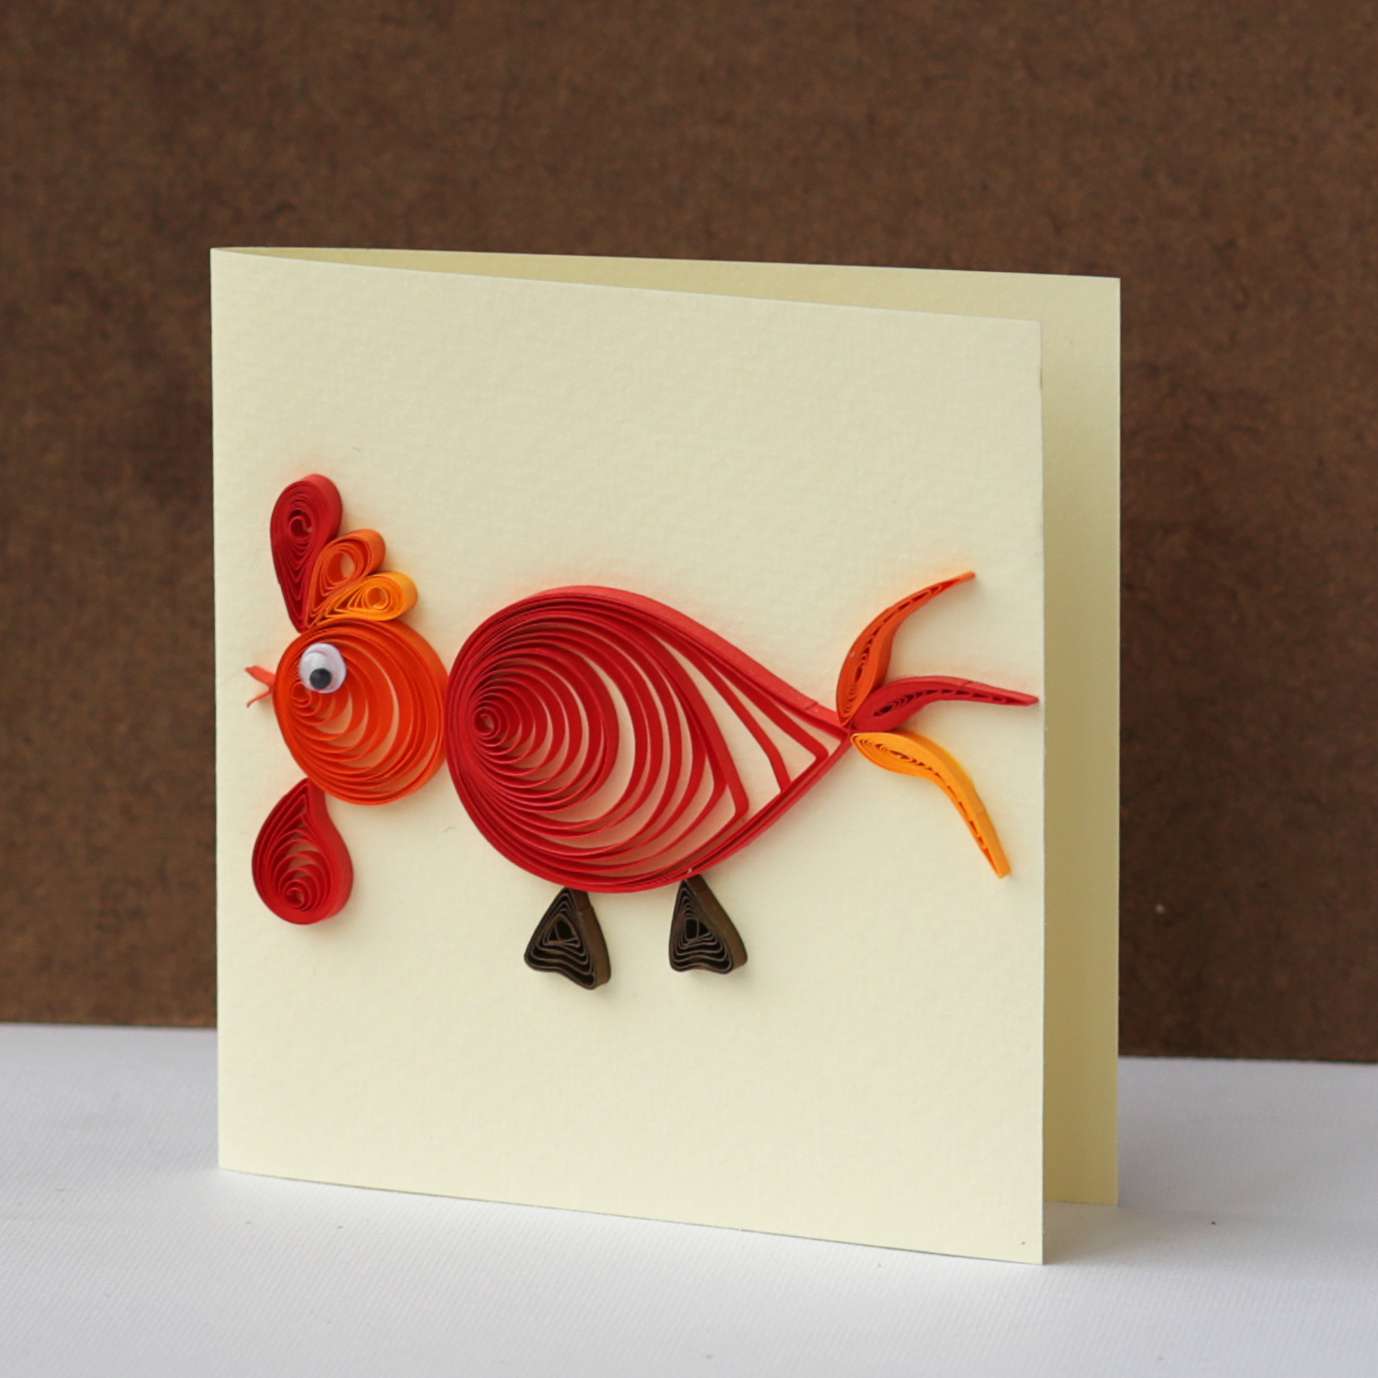 Cò quay bằng giấy thủ công với gà đỏ